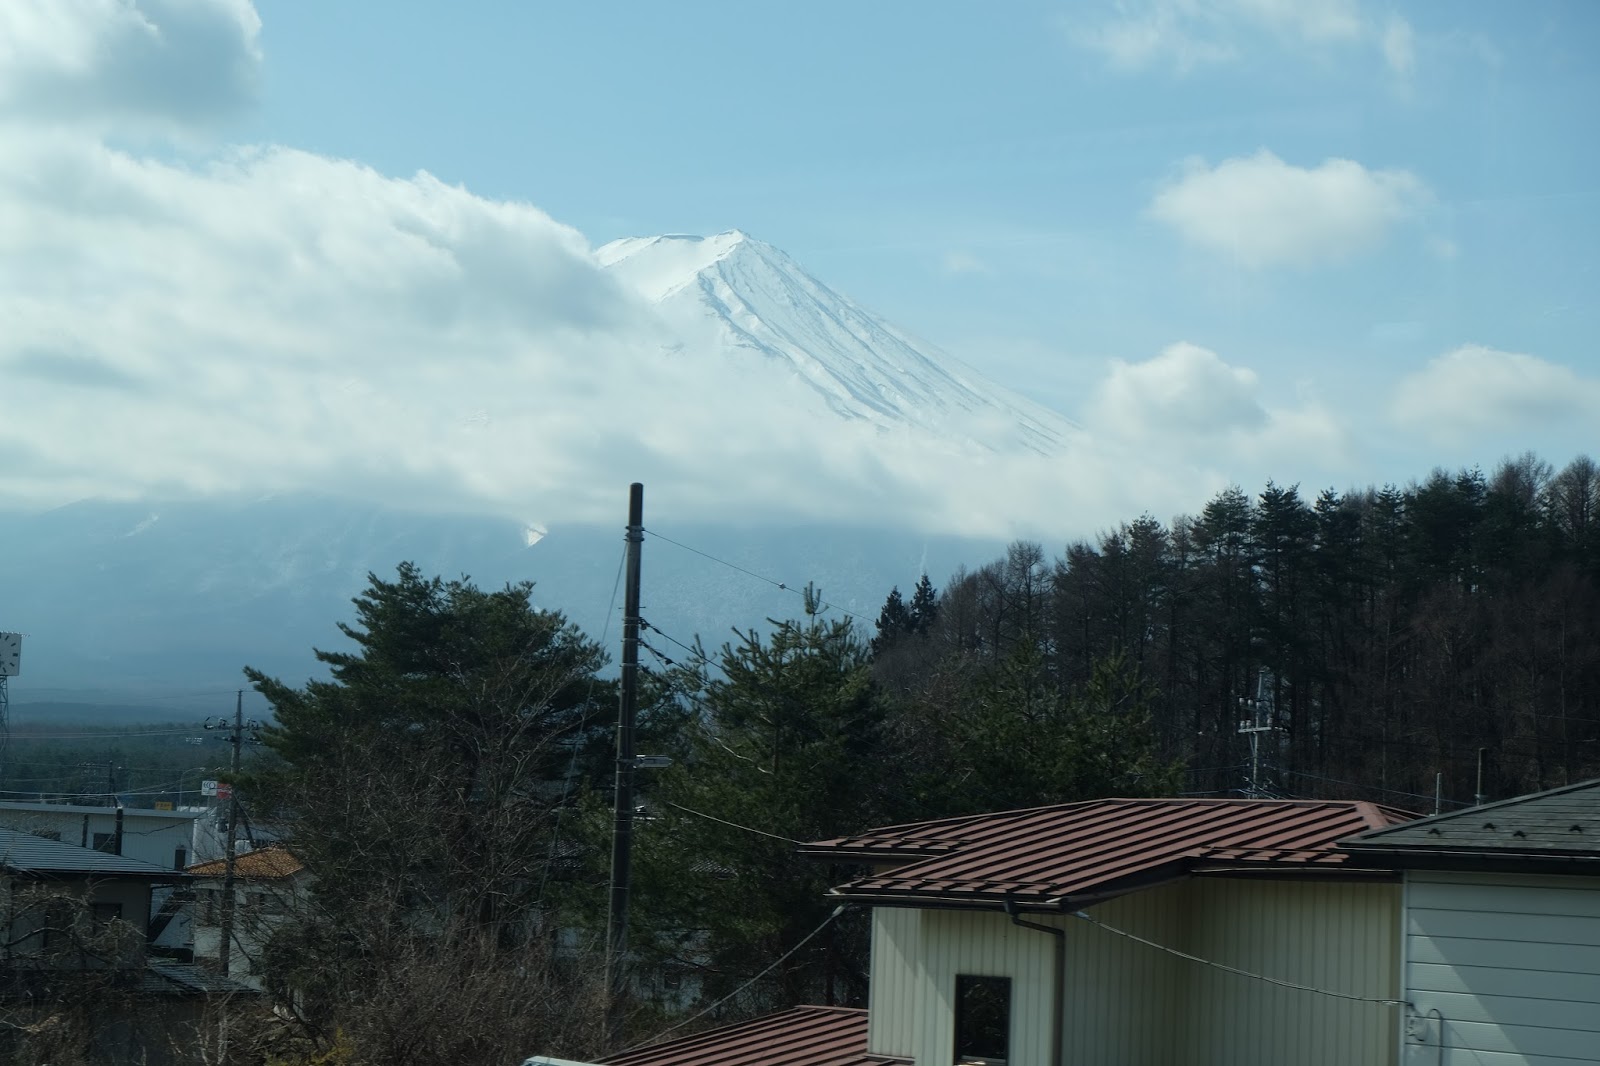 Day 3 Mt Fuji Jepang 9 Hari 9 Kota 8 Juta Rupiah